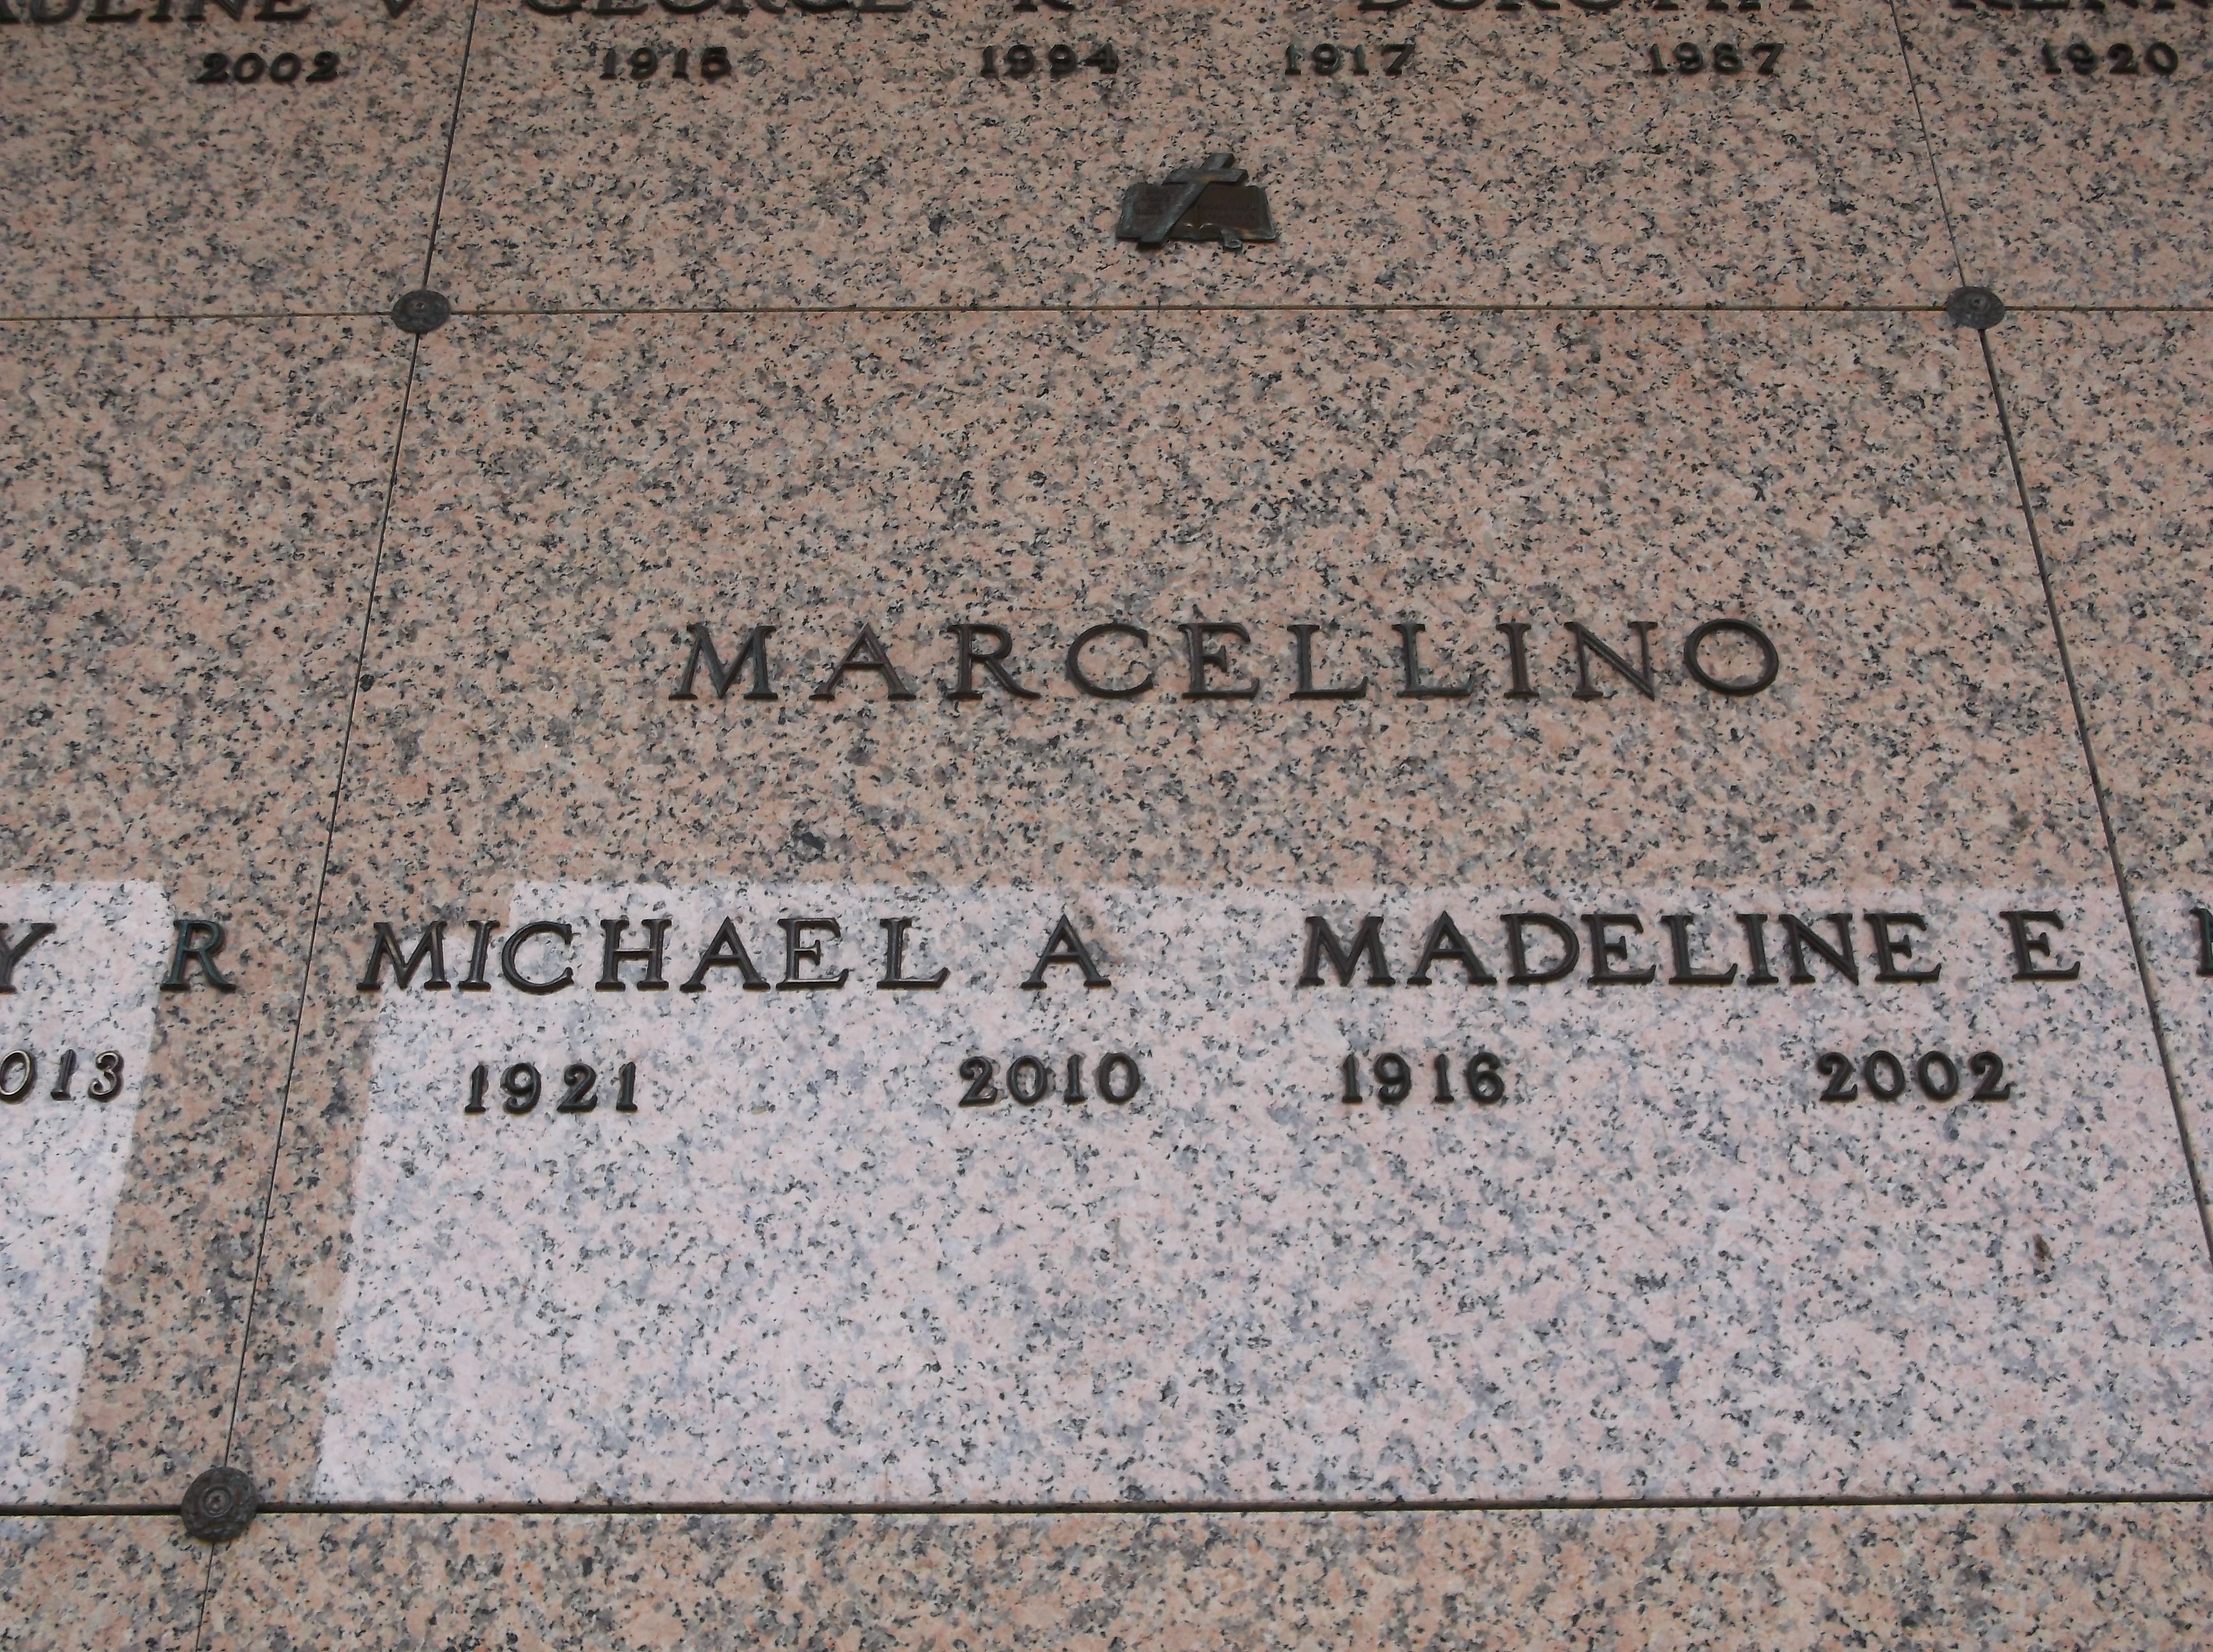 Michael A Marcellino